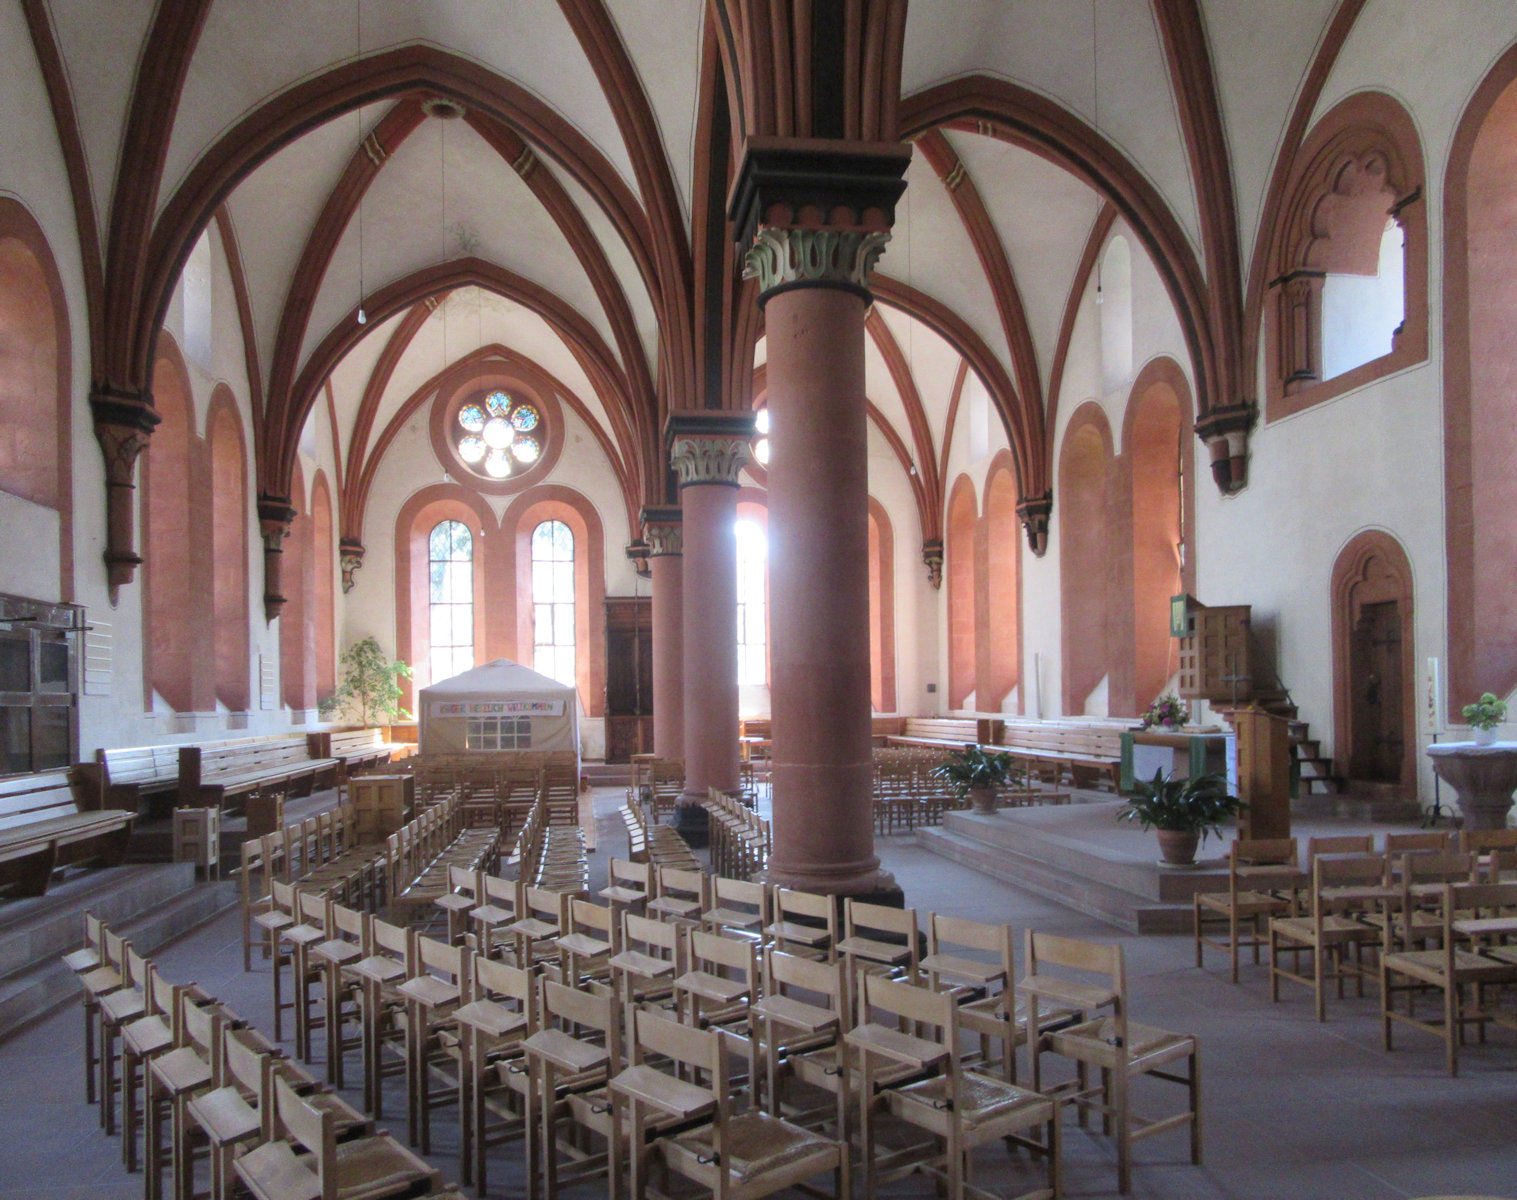 Refektorium der Mönche des Klosters Schönau, gebaut vor 1250, heute Evang. Stadtkirche